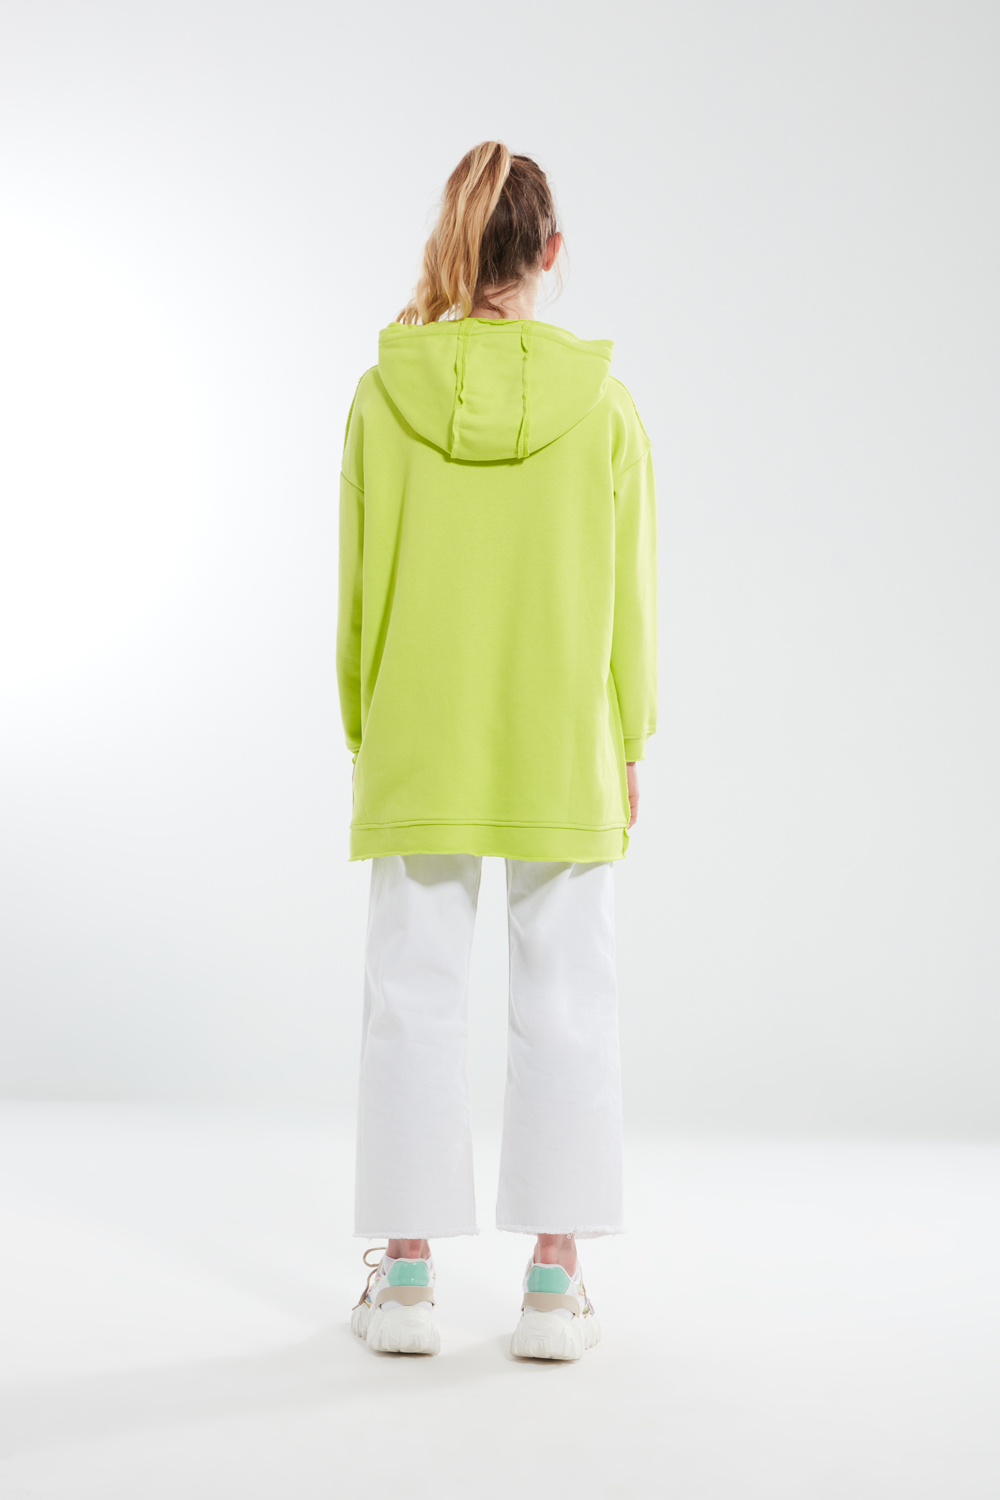 Three Thread Neon Green Sweatshirt with Pockets